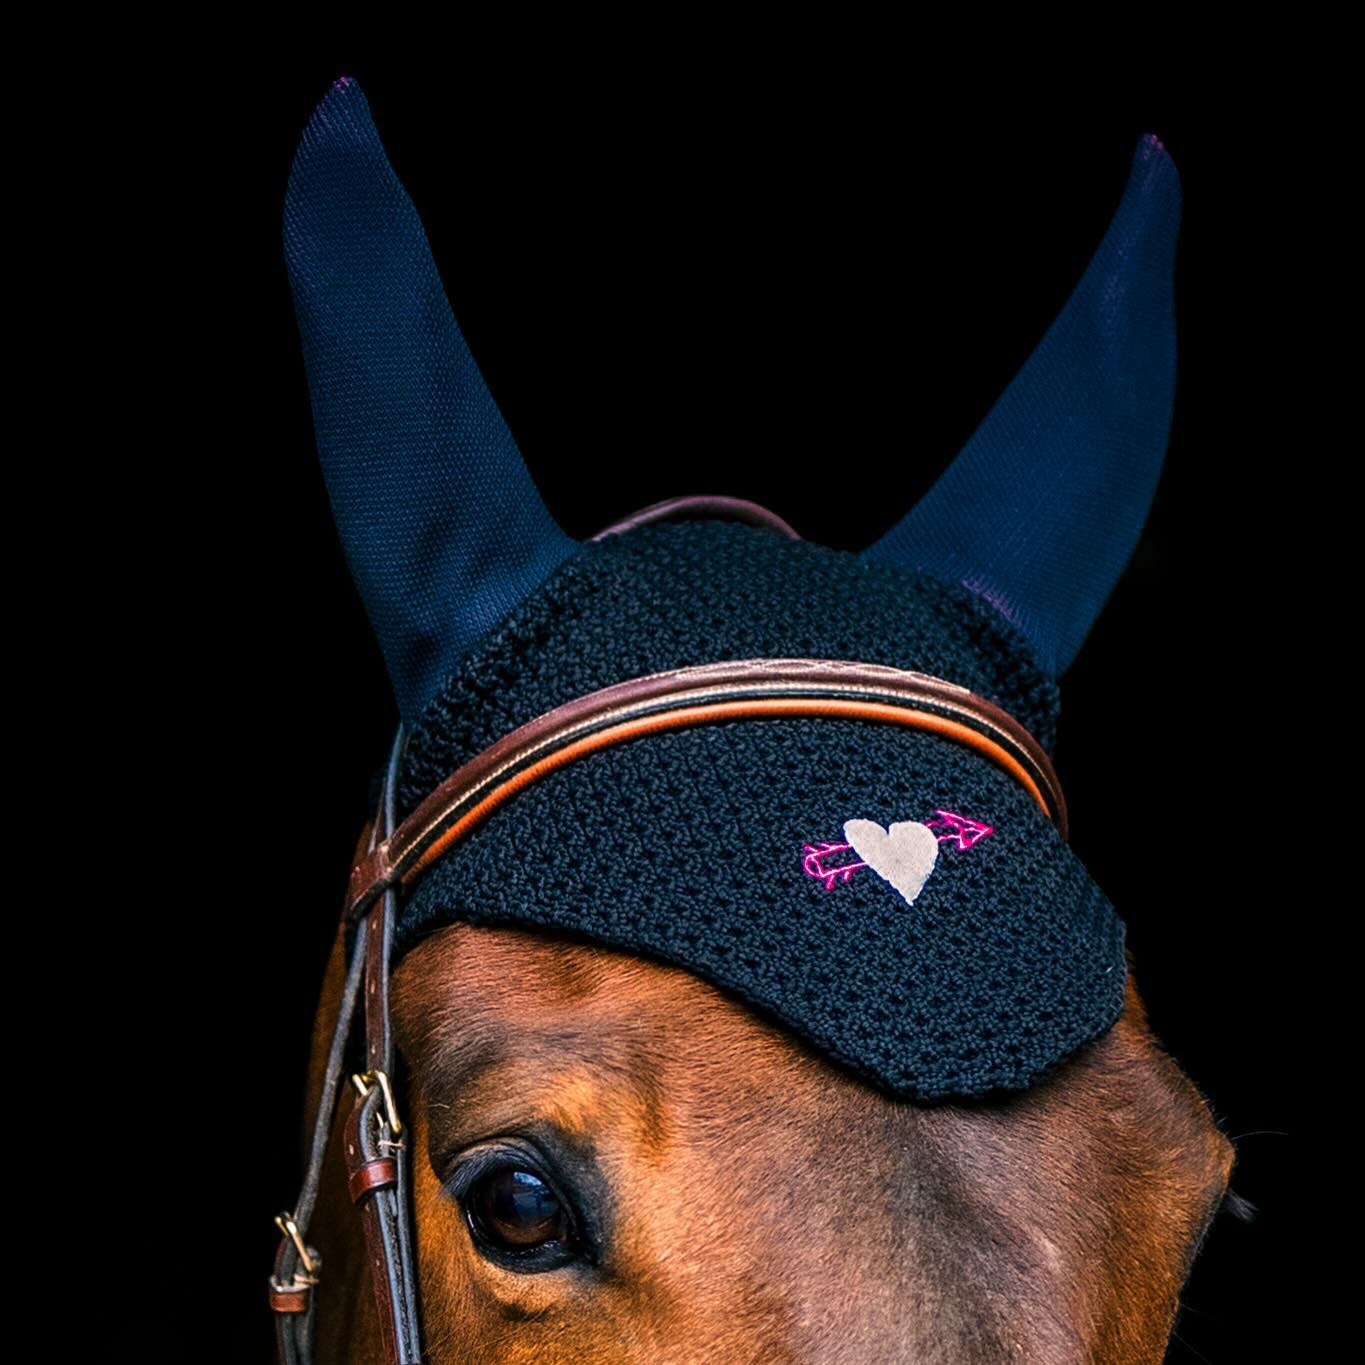 Comment ne pas craquer? 
📸 @hpalprod 
//
#tacante #bonnet #bonnetcheval #madeinfrance #ecoresponsable #equestrainlife #equestrianstyle #rock #love